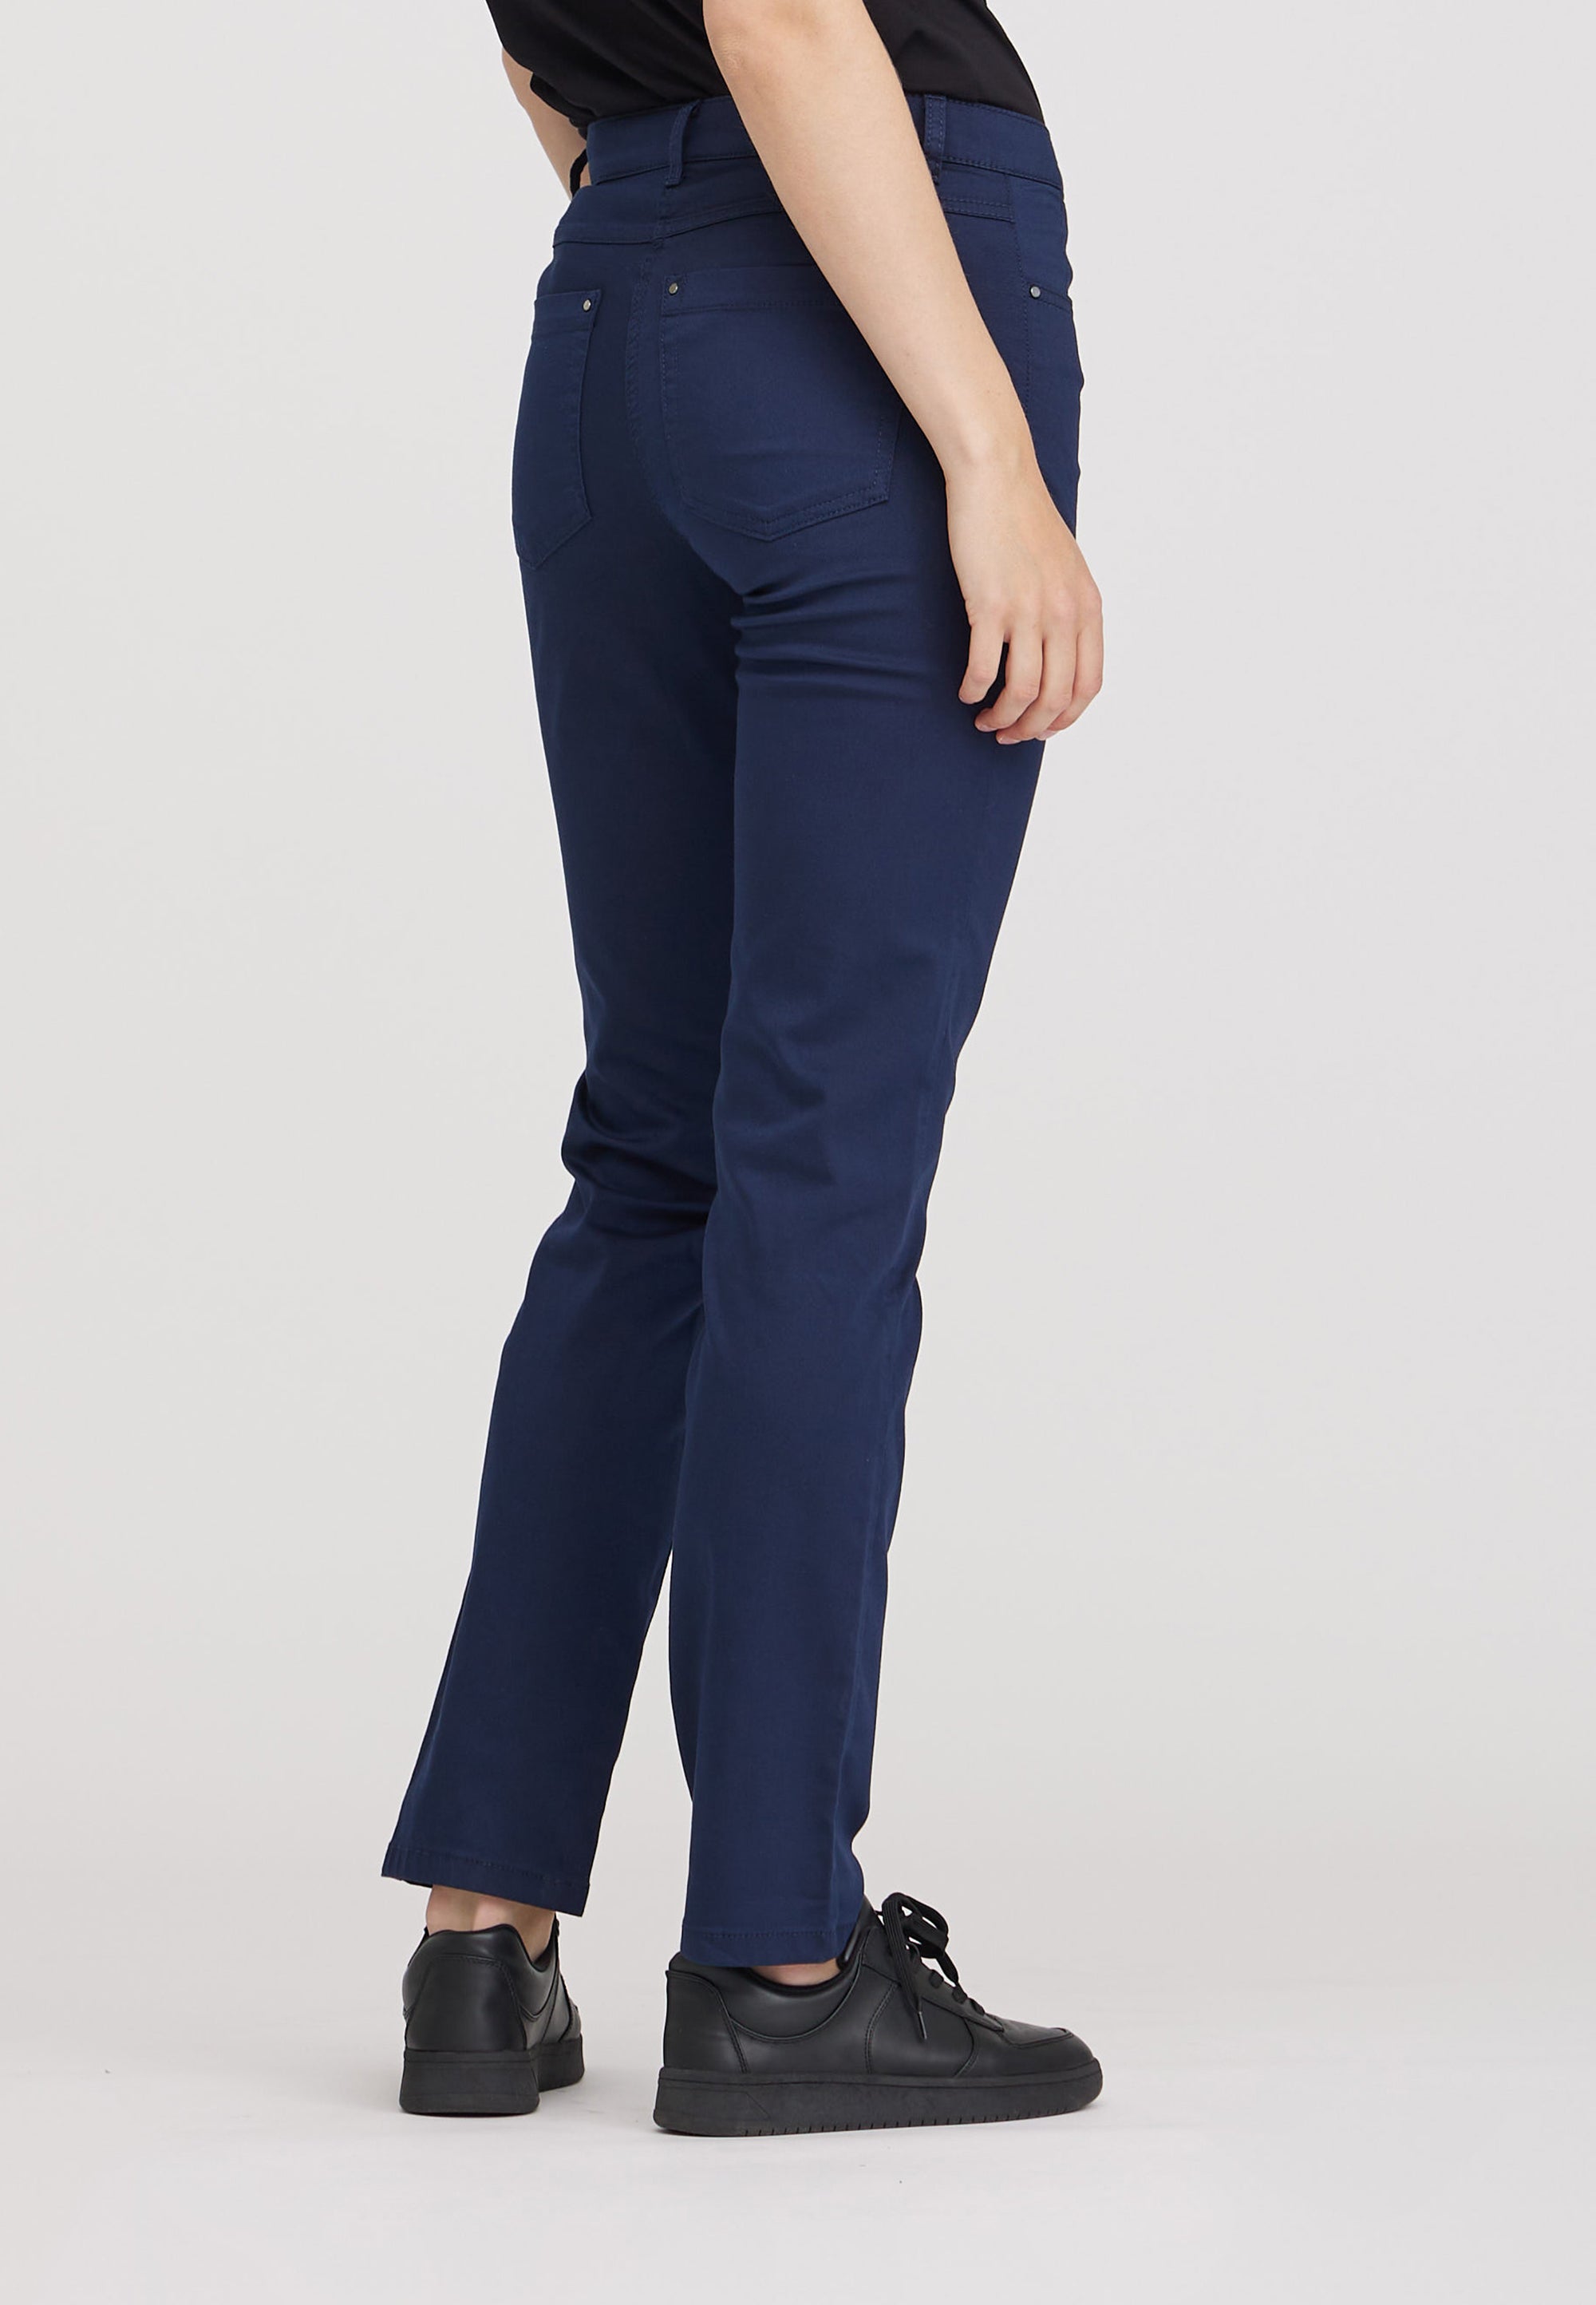 LAURIE Charlotte Regular - Medium Length Trousers REGULAR 49000 Navy